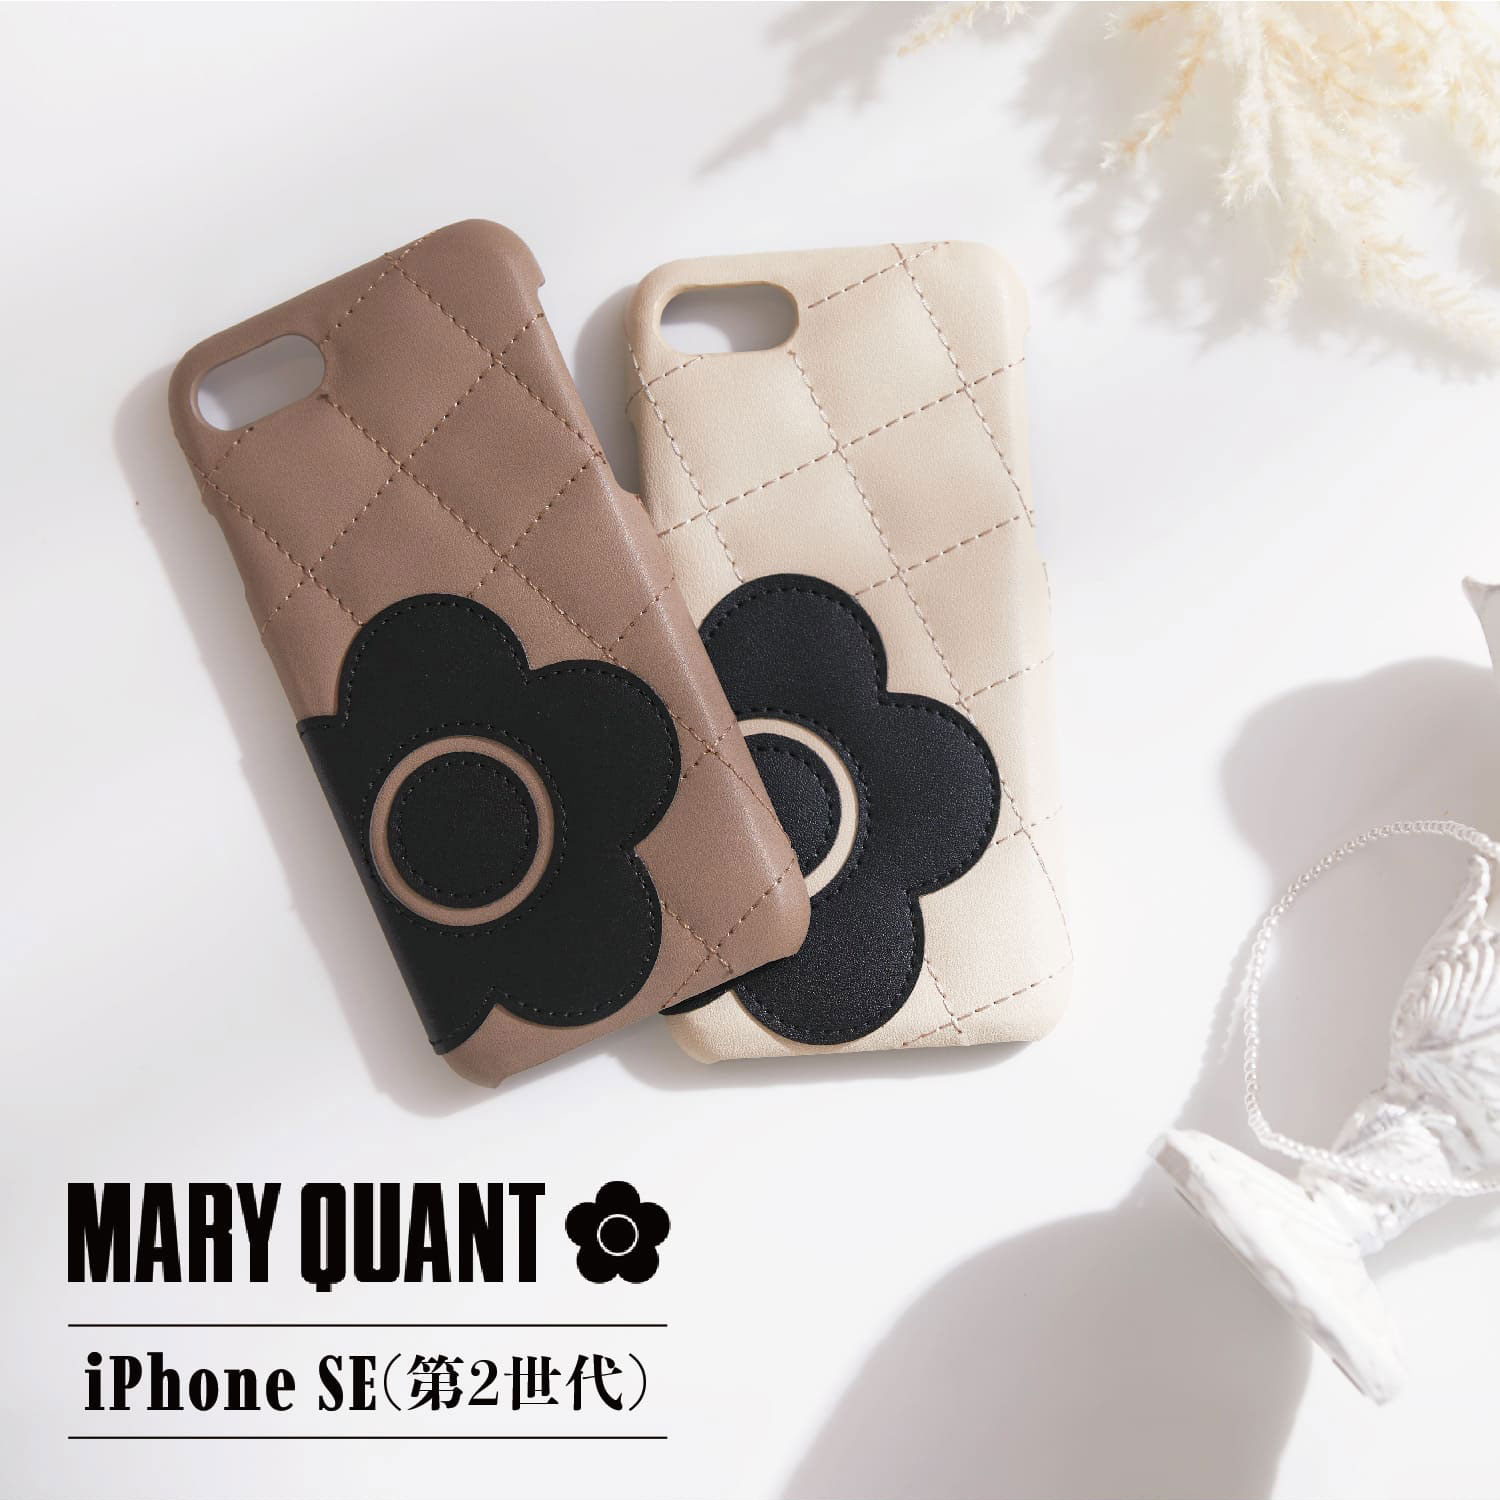 マリークヮント MARY QUANT iPhone SE 8 ケース スマホ 携帯 